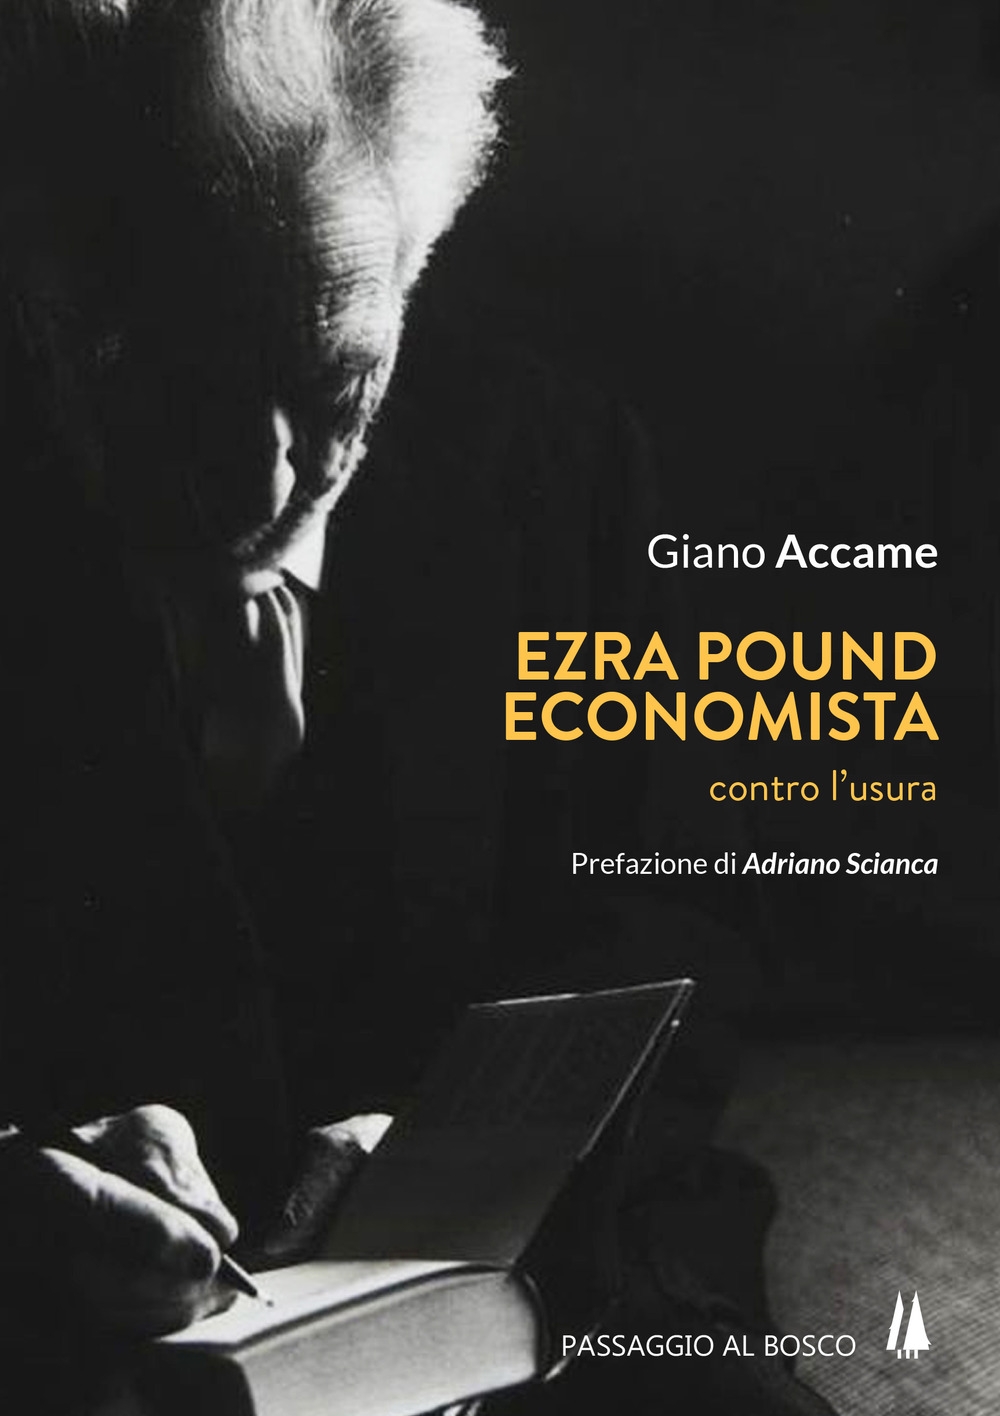 Libri Giano Accame - Ezra Pound Economista. Contro L'Usura NUOVO SIGILLATO, EDIZIONE DEL 18/09/2017 SUBITO DISPONIBILE